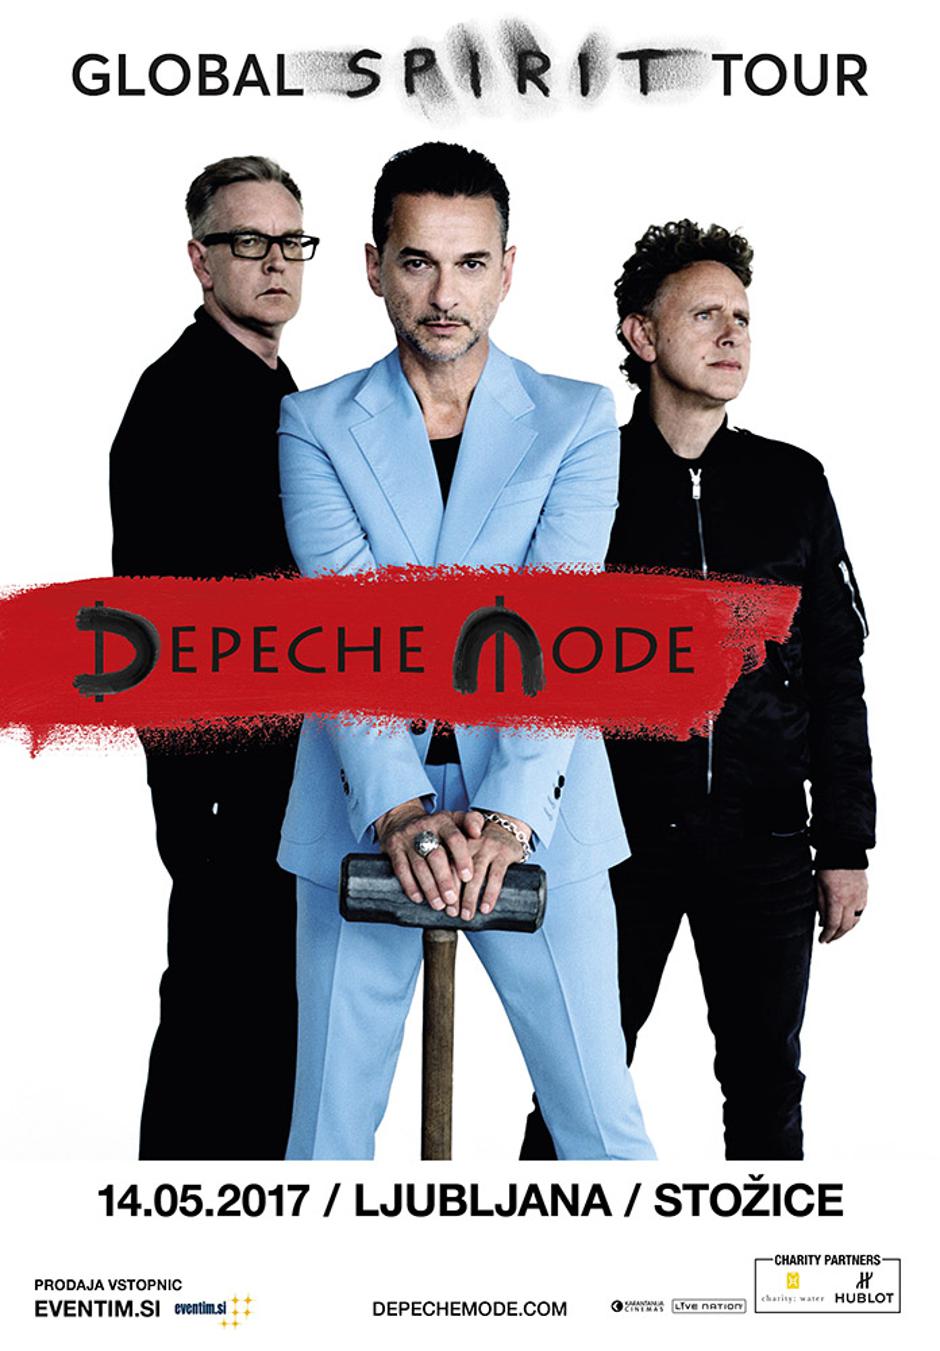 depeche mode